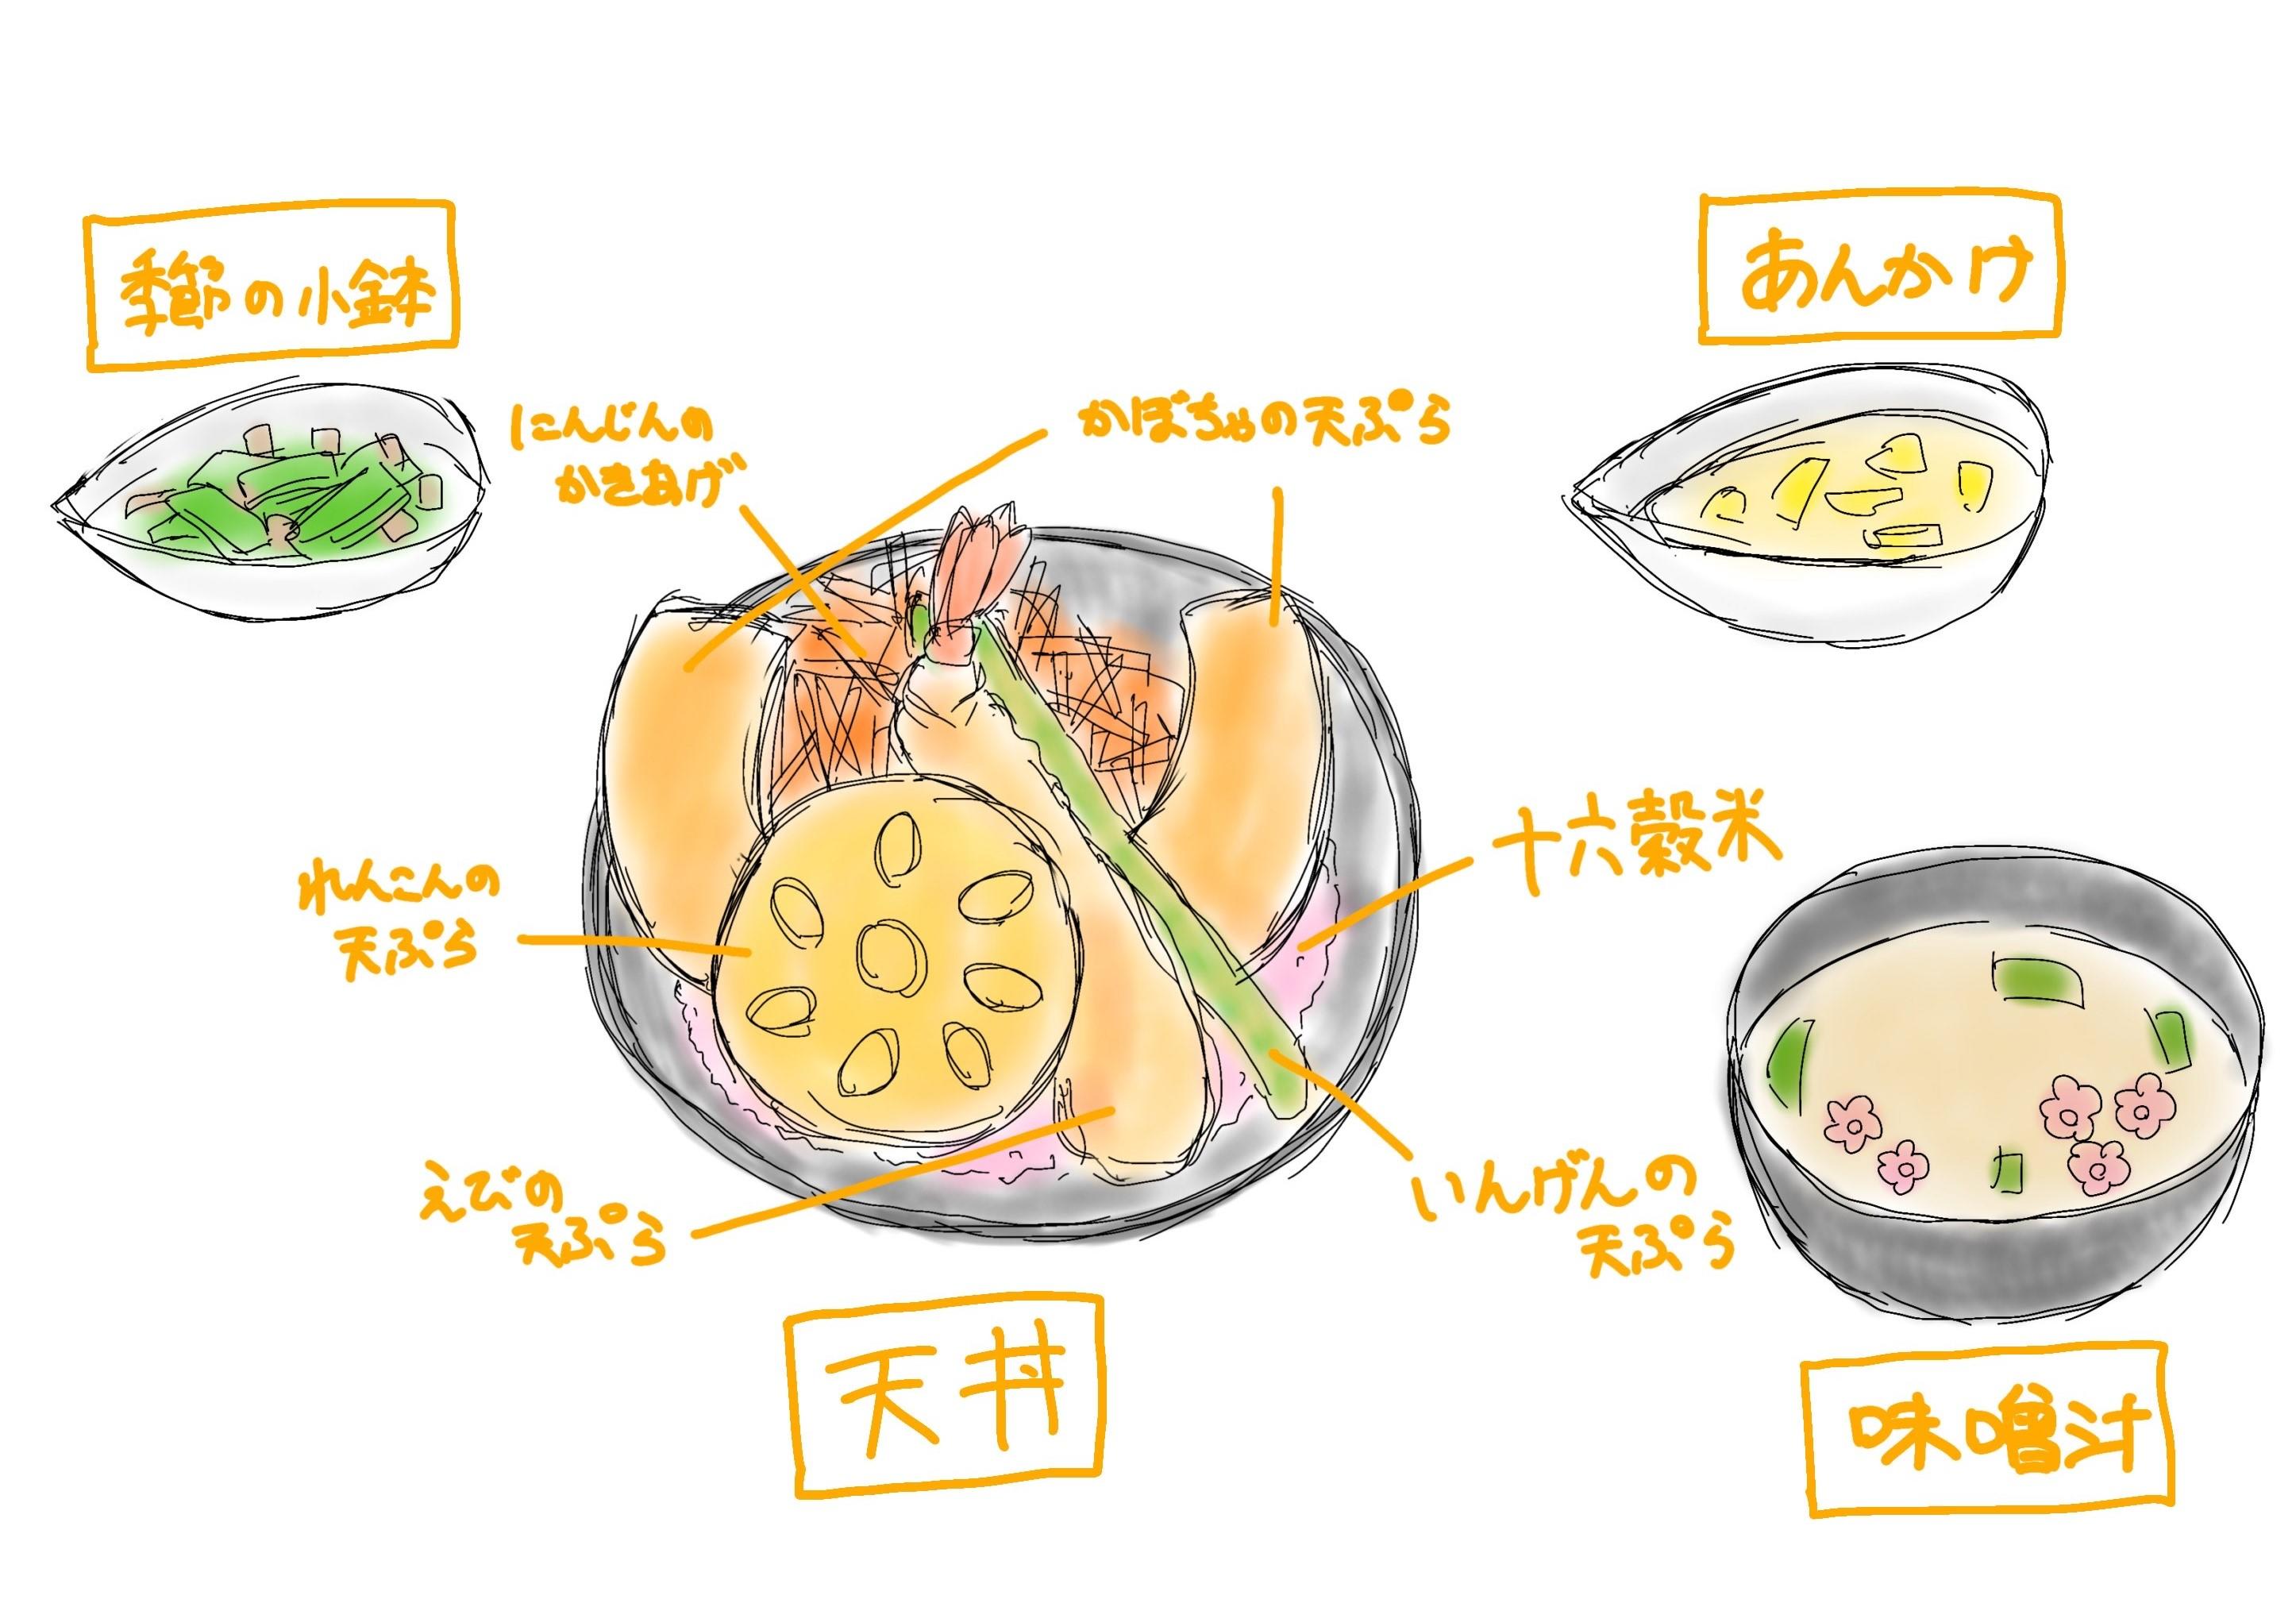 大妻女子大学の学生が千代田区の特徴を表現した「江戸城兜天丼」を考案 -- 4月25日から千代田区役所本庁内の食堂で販売中